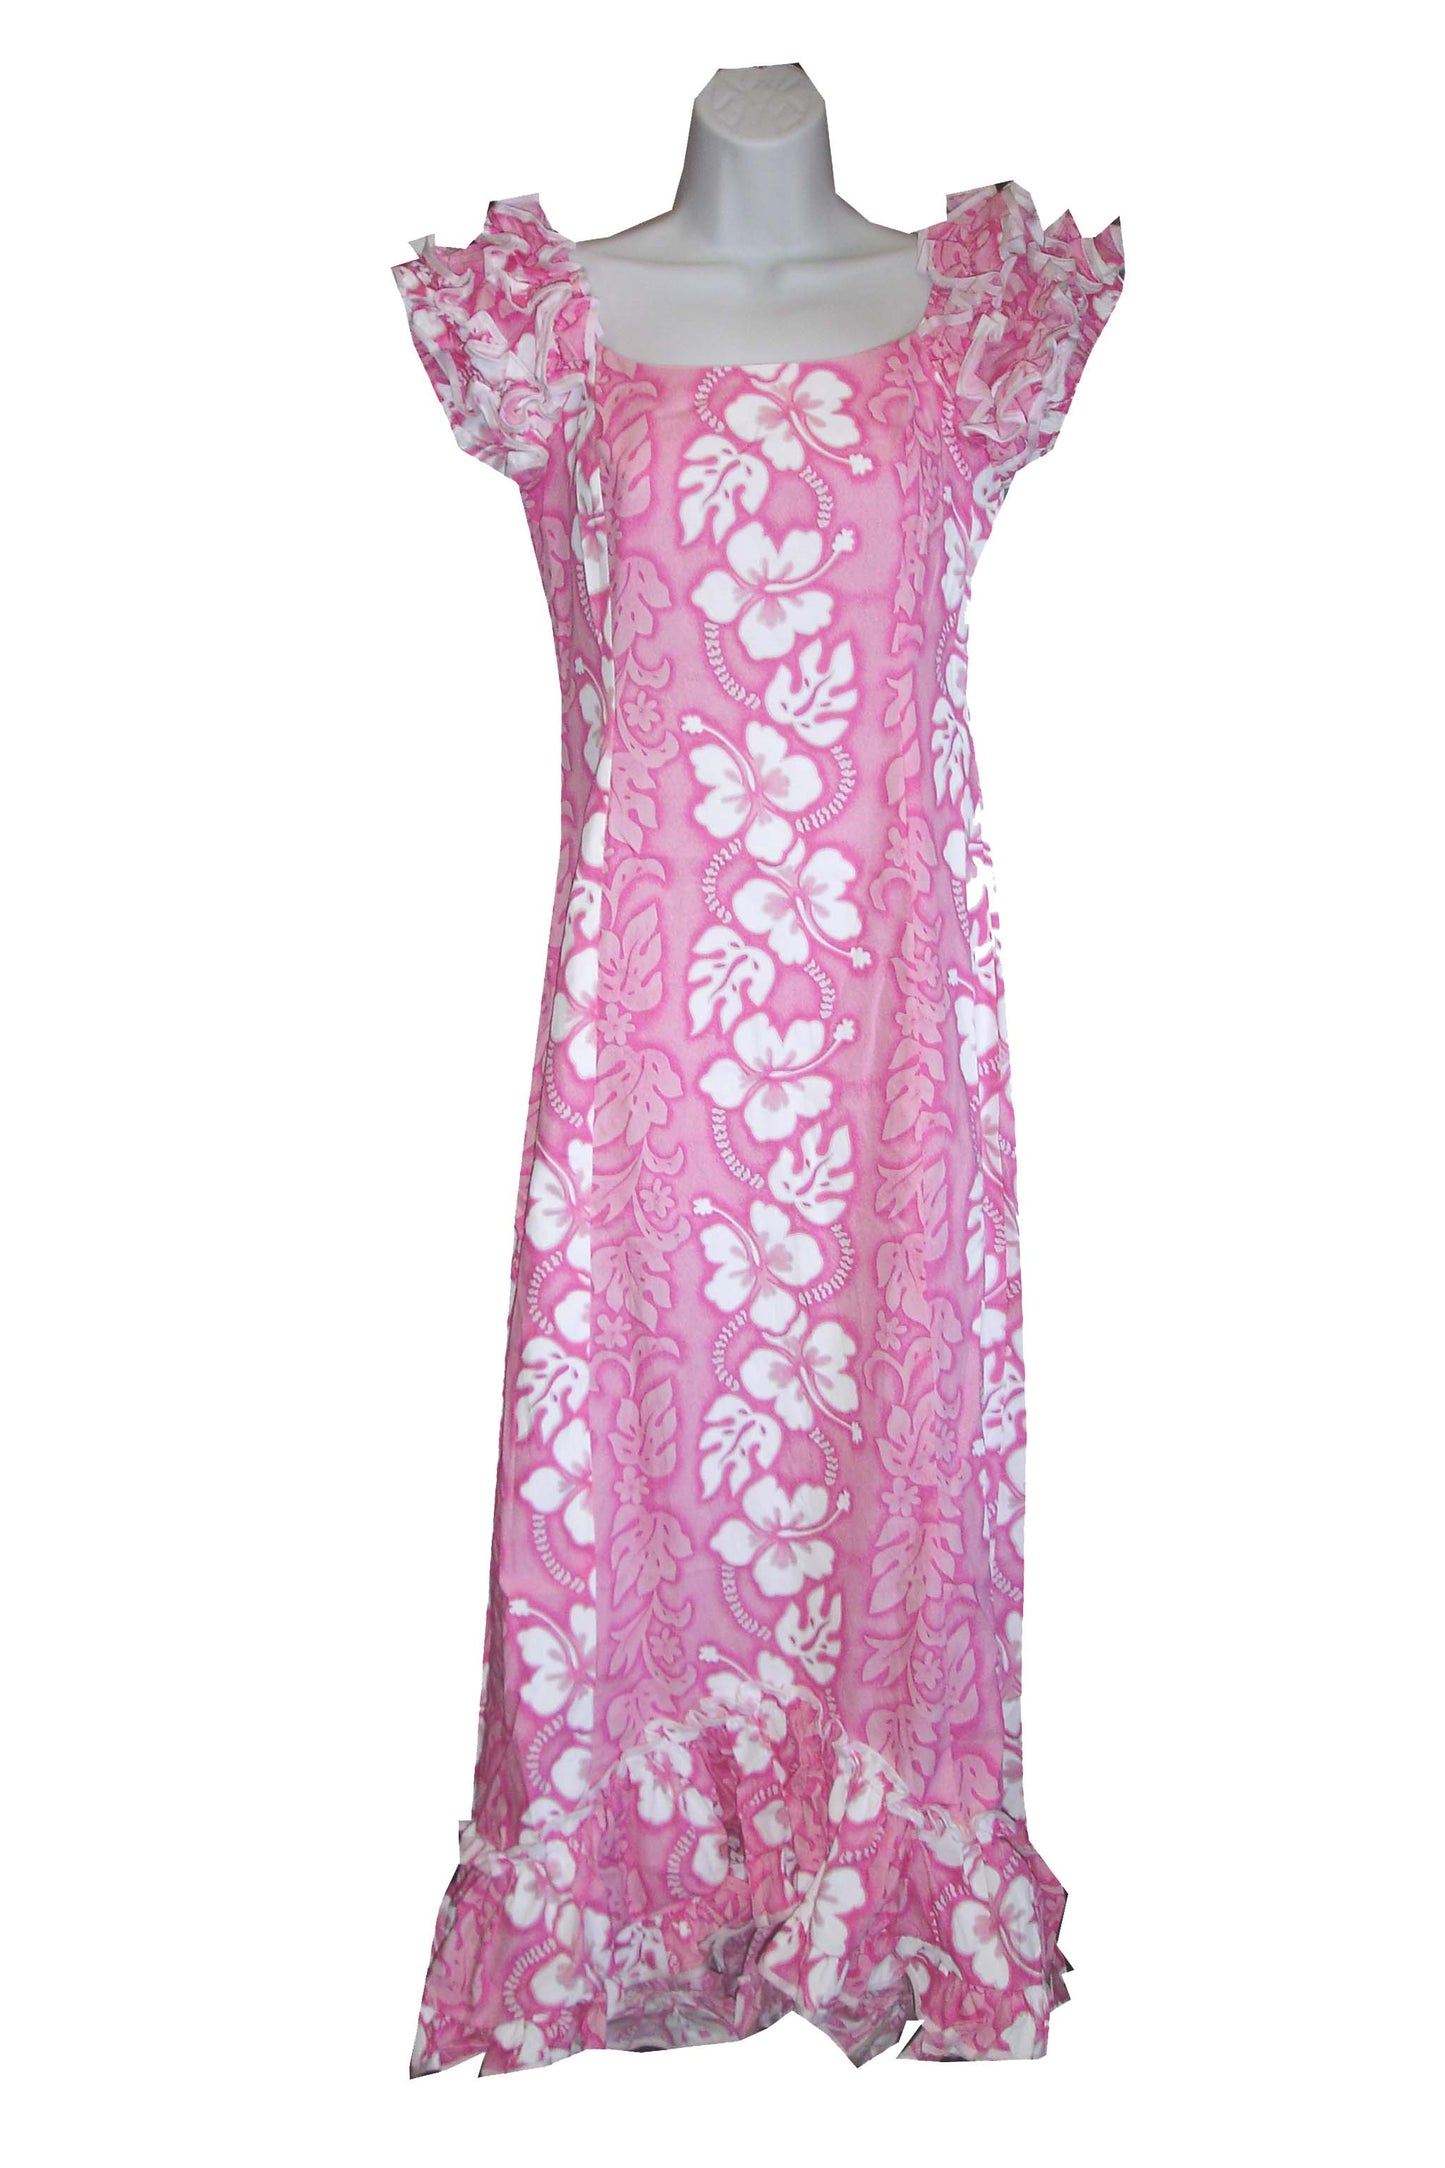 Hibiscus Panel Long Cotton Hawaiian Muumuu Dress Made in Hawaii